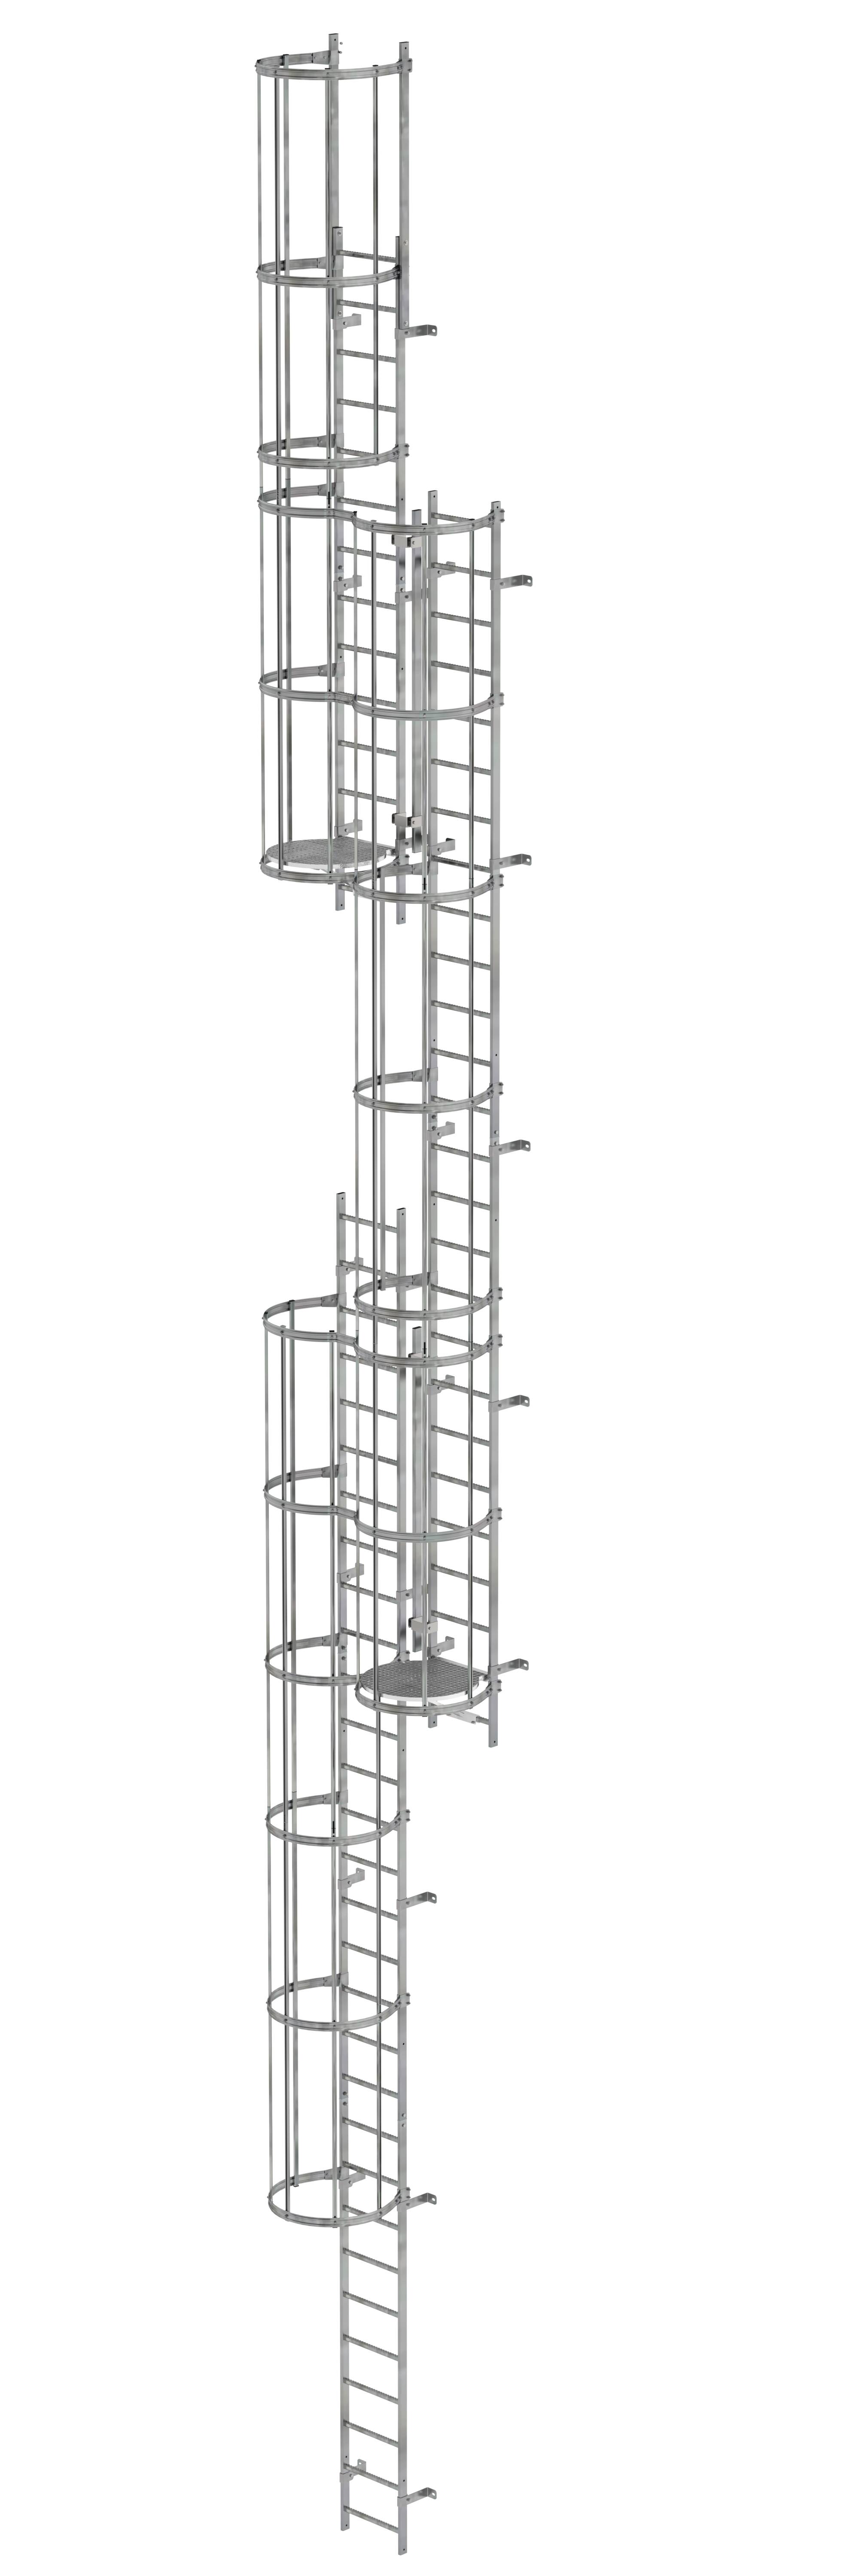 MUNK Mehrzügige Steigleiter mit Rückenschutz (Maschinen) Stahl verzinkt  